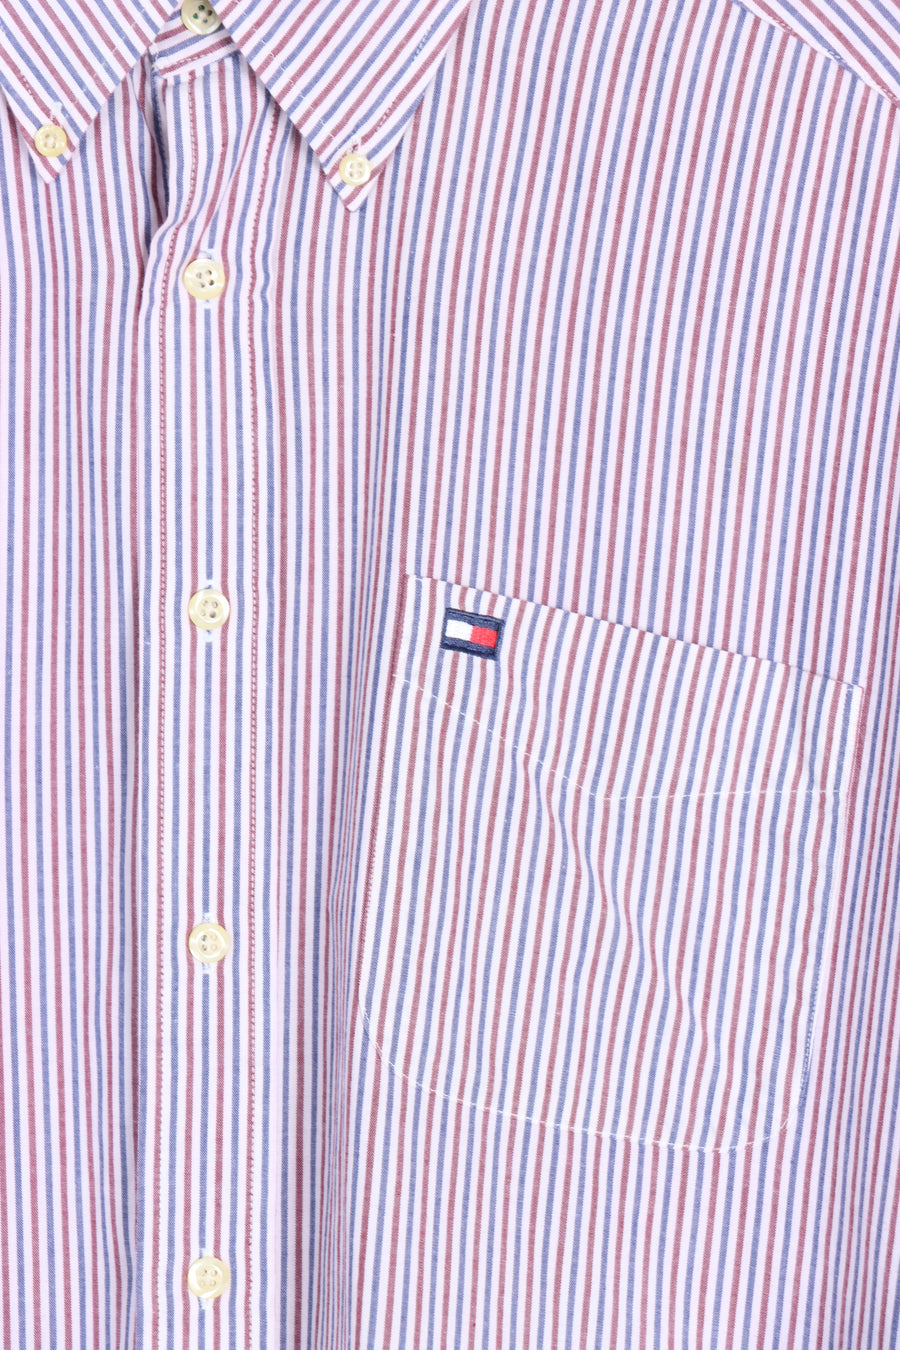 TOMMY HILFIGER Blue & Red Stripe Long Sleeve Shirt (L) - Vintage Sole Melbourne